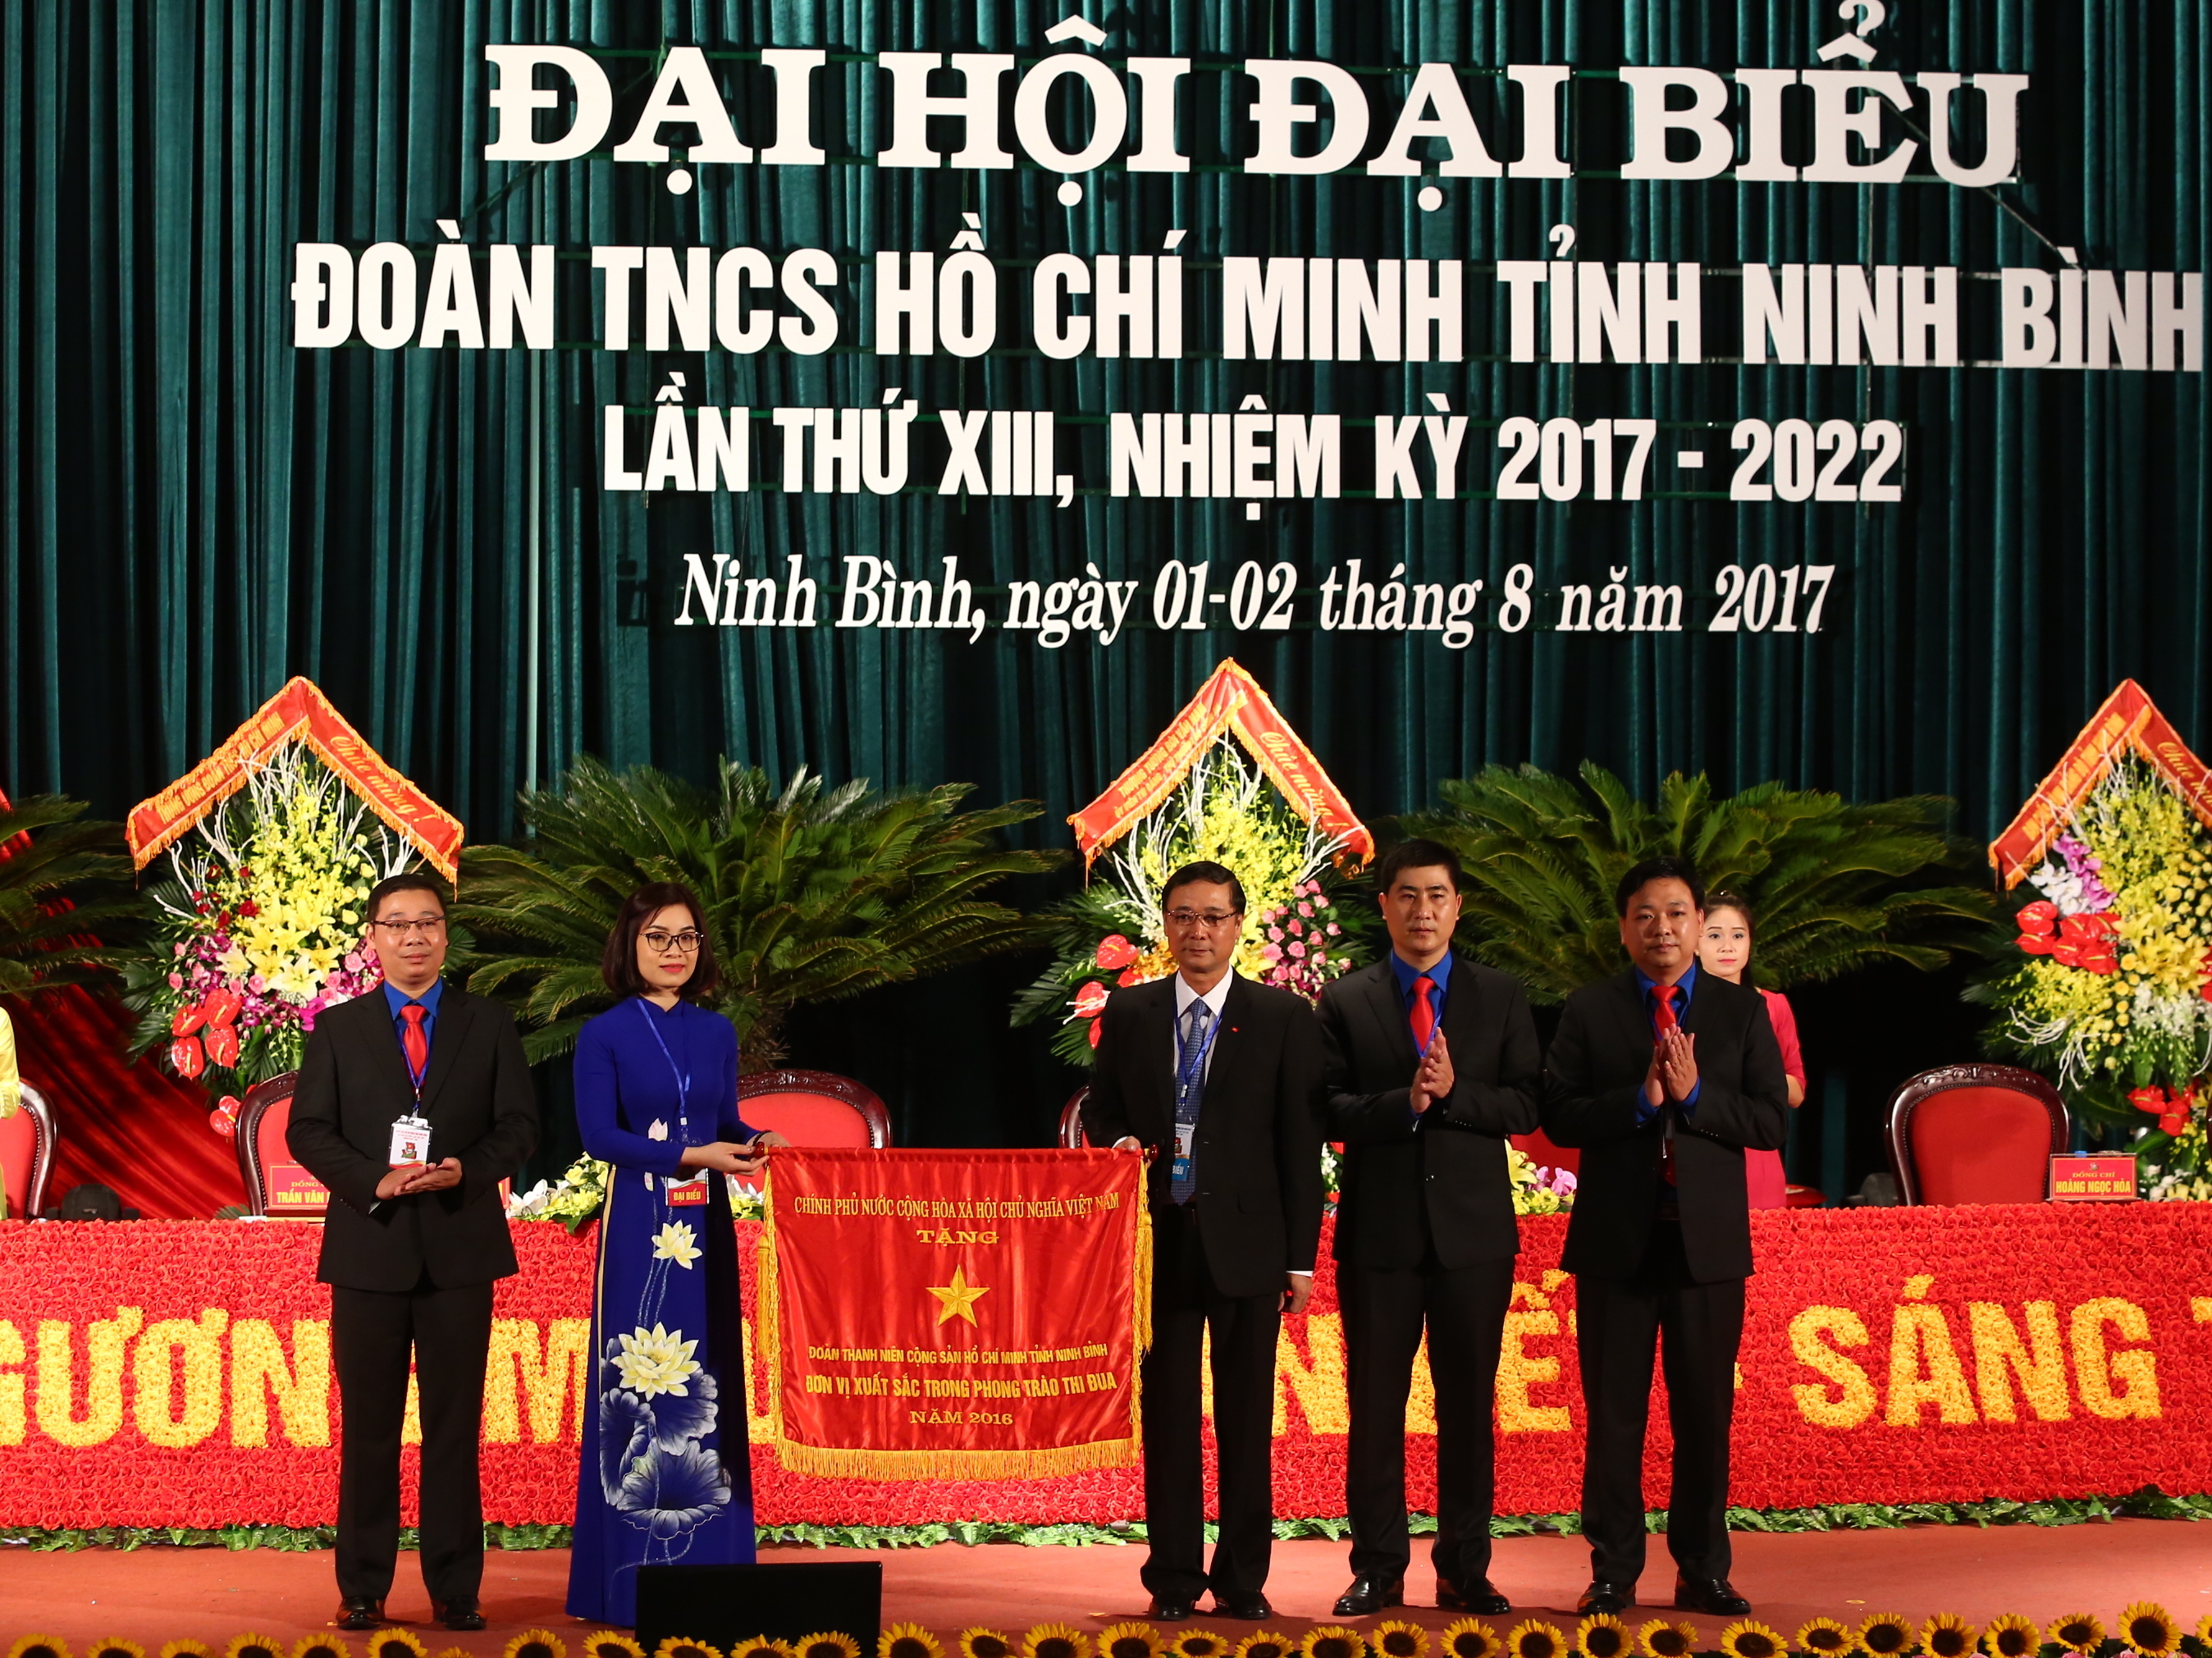 Đoàn TNCS Hồ Chí Minh tỉnh Ninh Binh vinh dự nhận Cờ thi đua của Chính phủ tại Đại hội